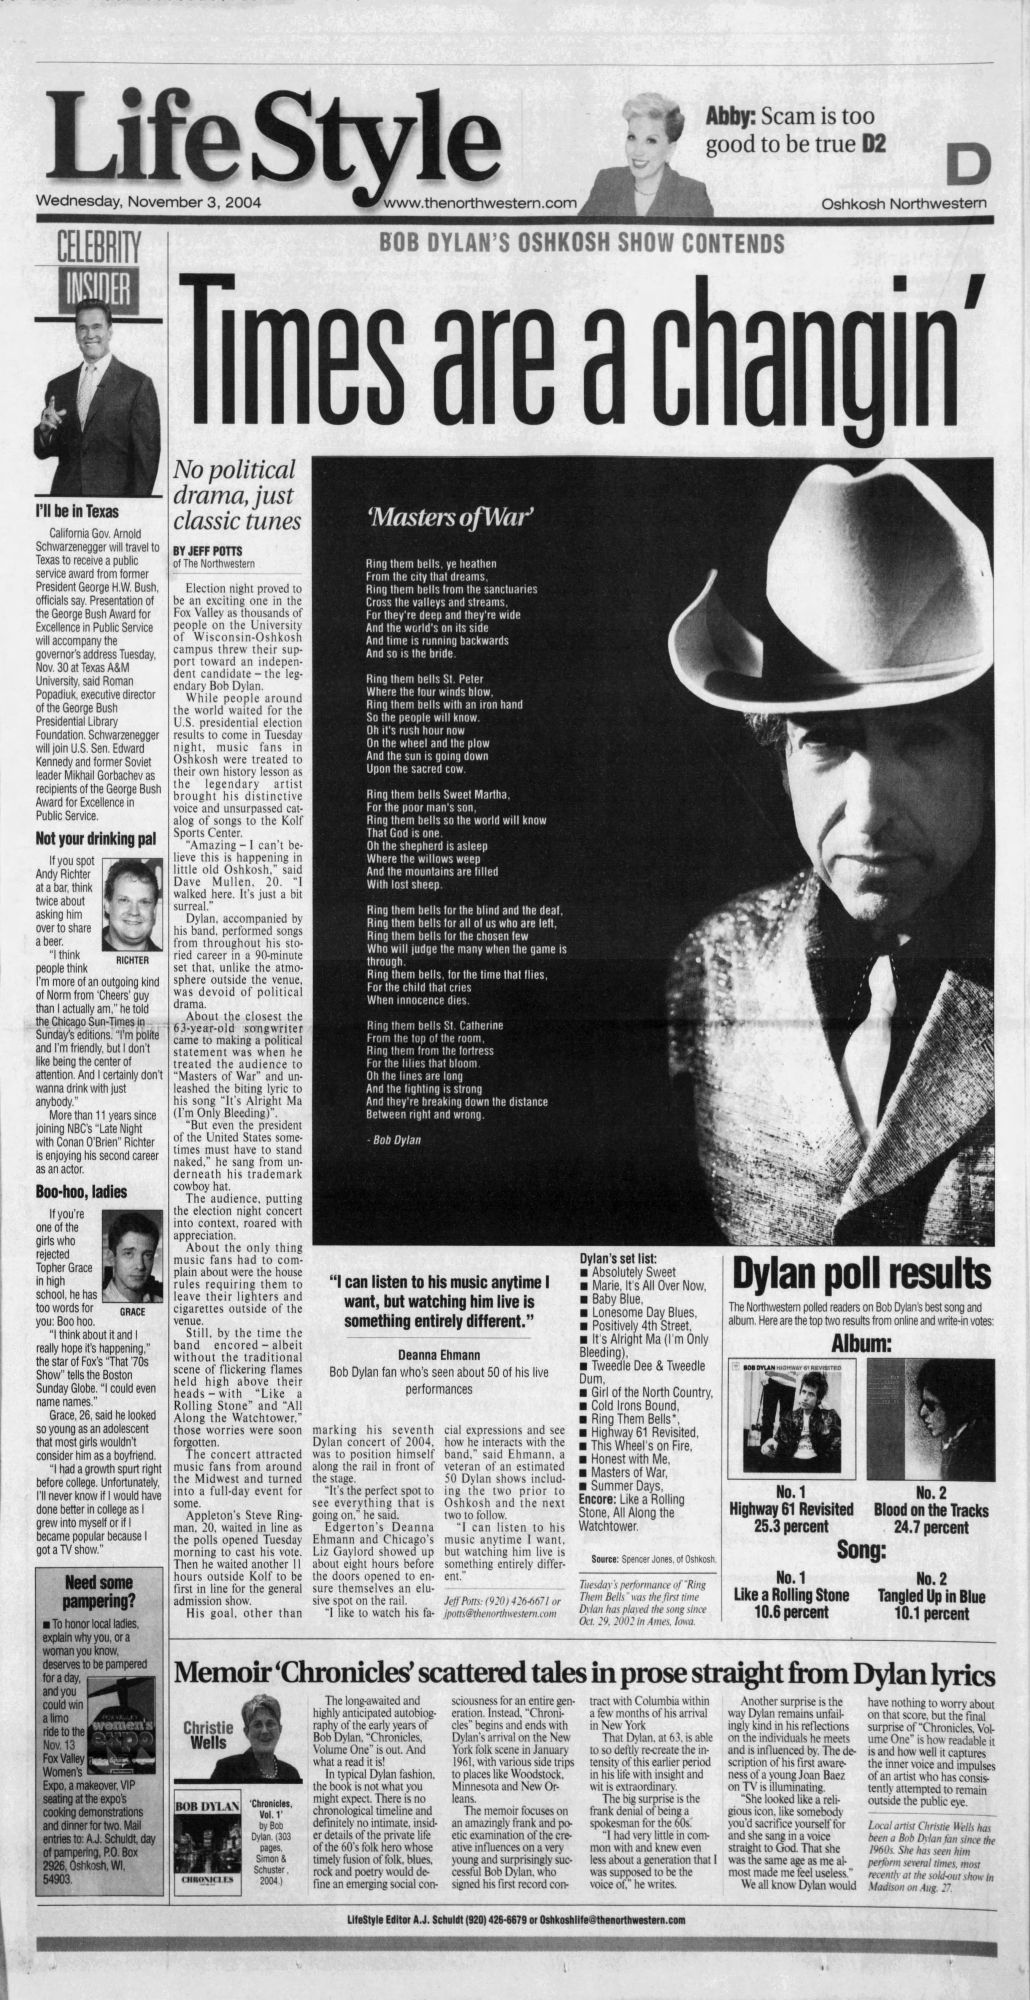 OSKOSH NORTHWESTERN 2004 Bob Dylan cover story